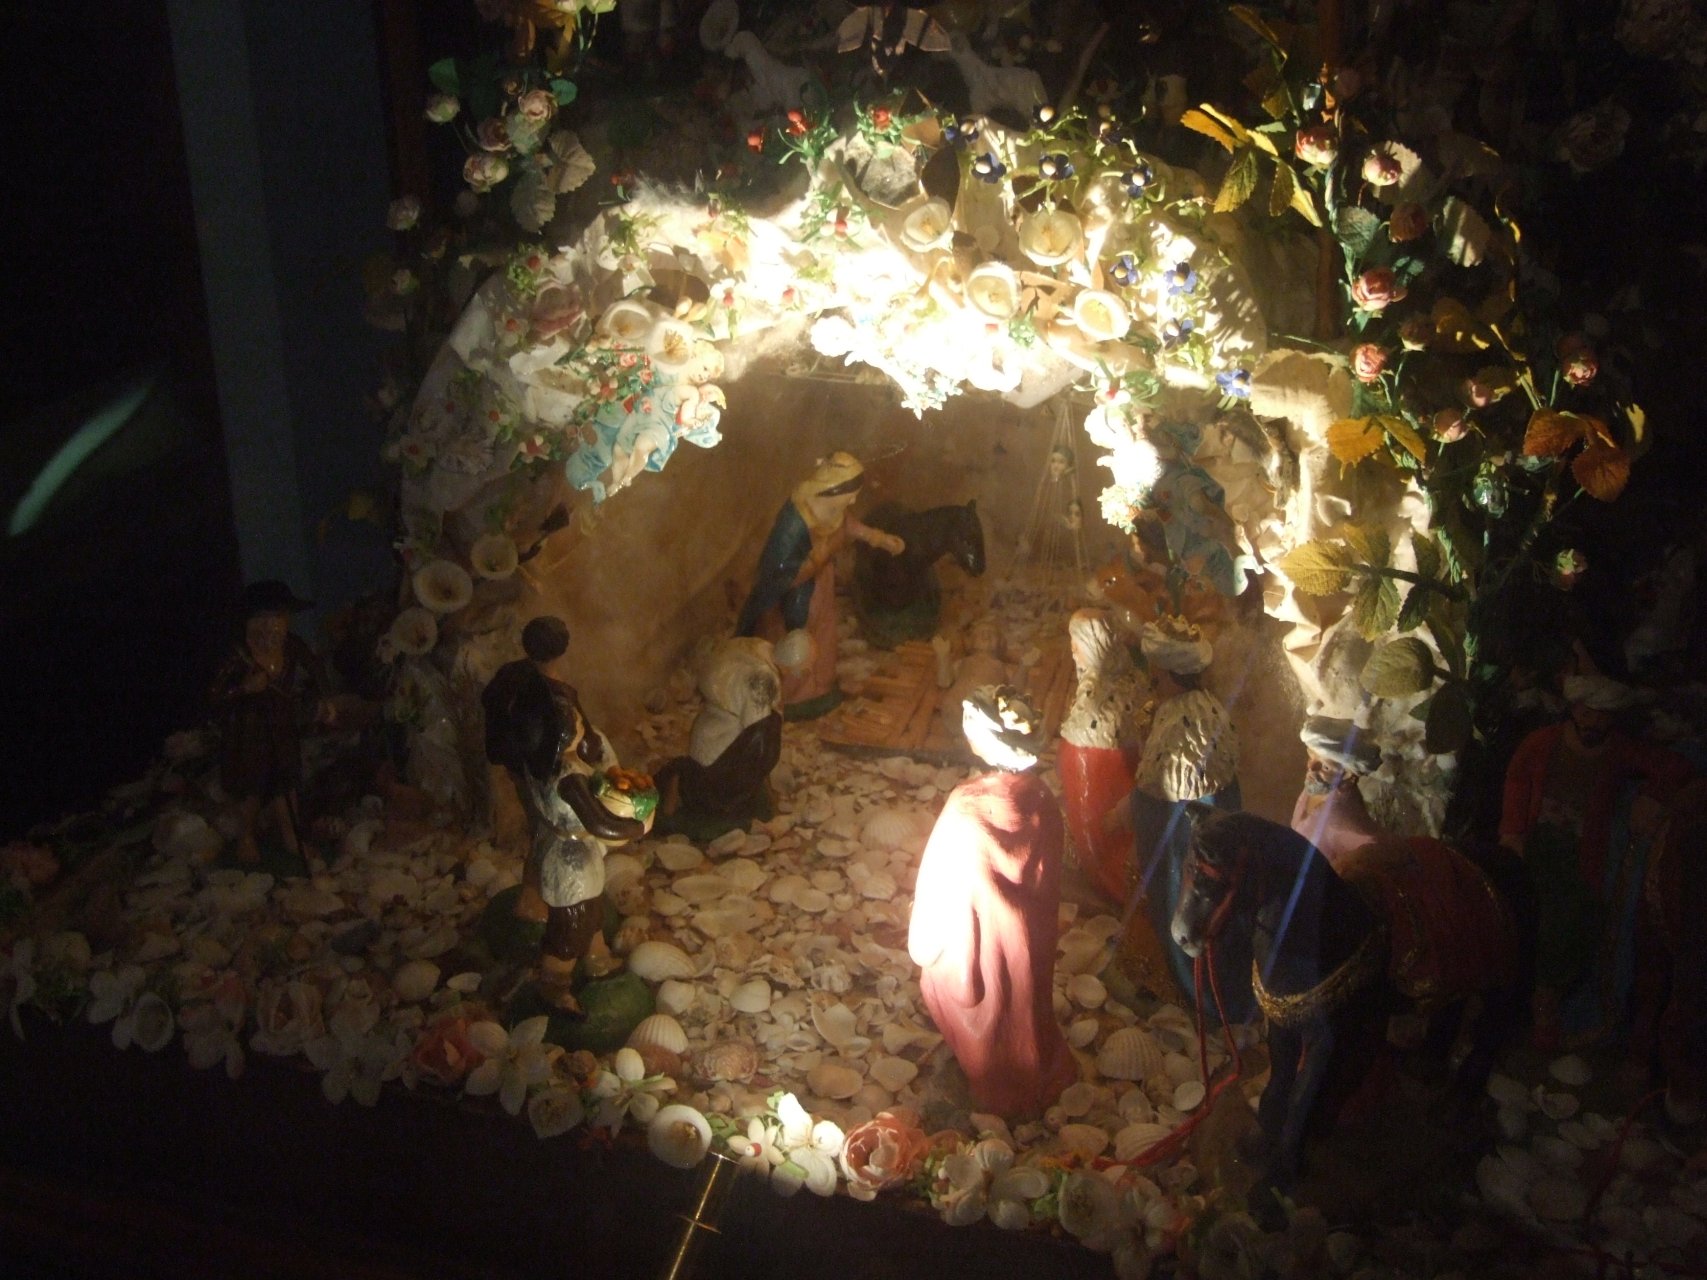 Zbiory przyklasztornego muzeum - szopki bożonarodzeniowe